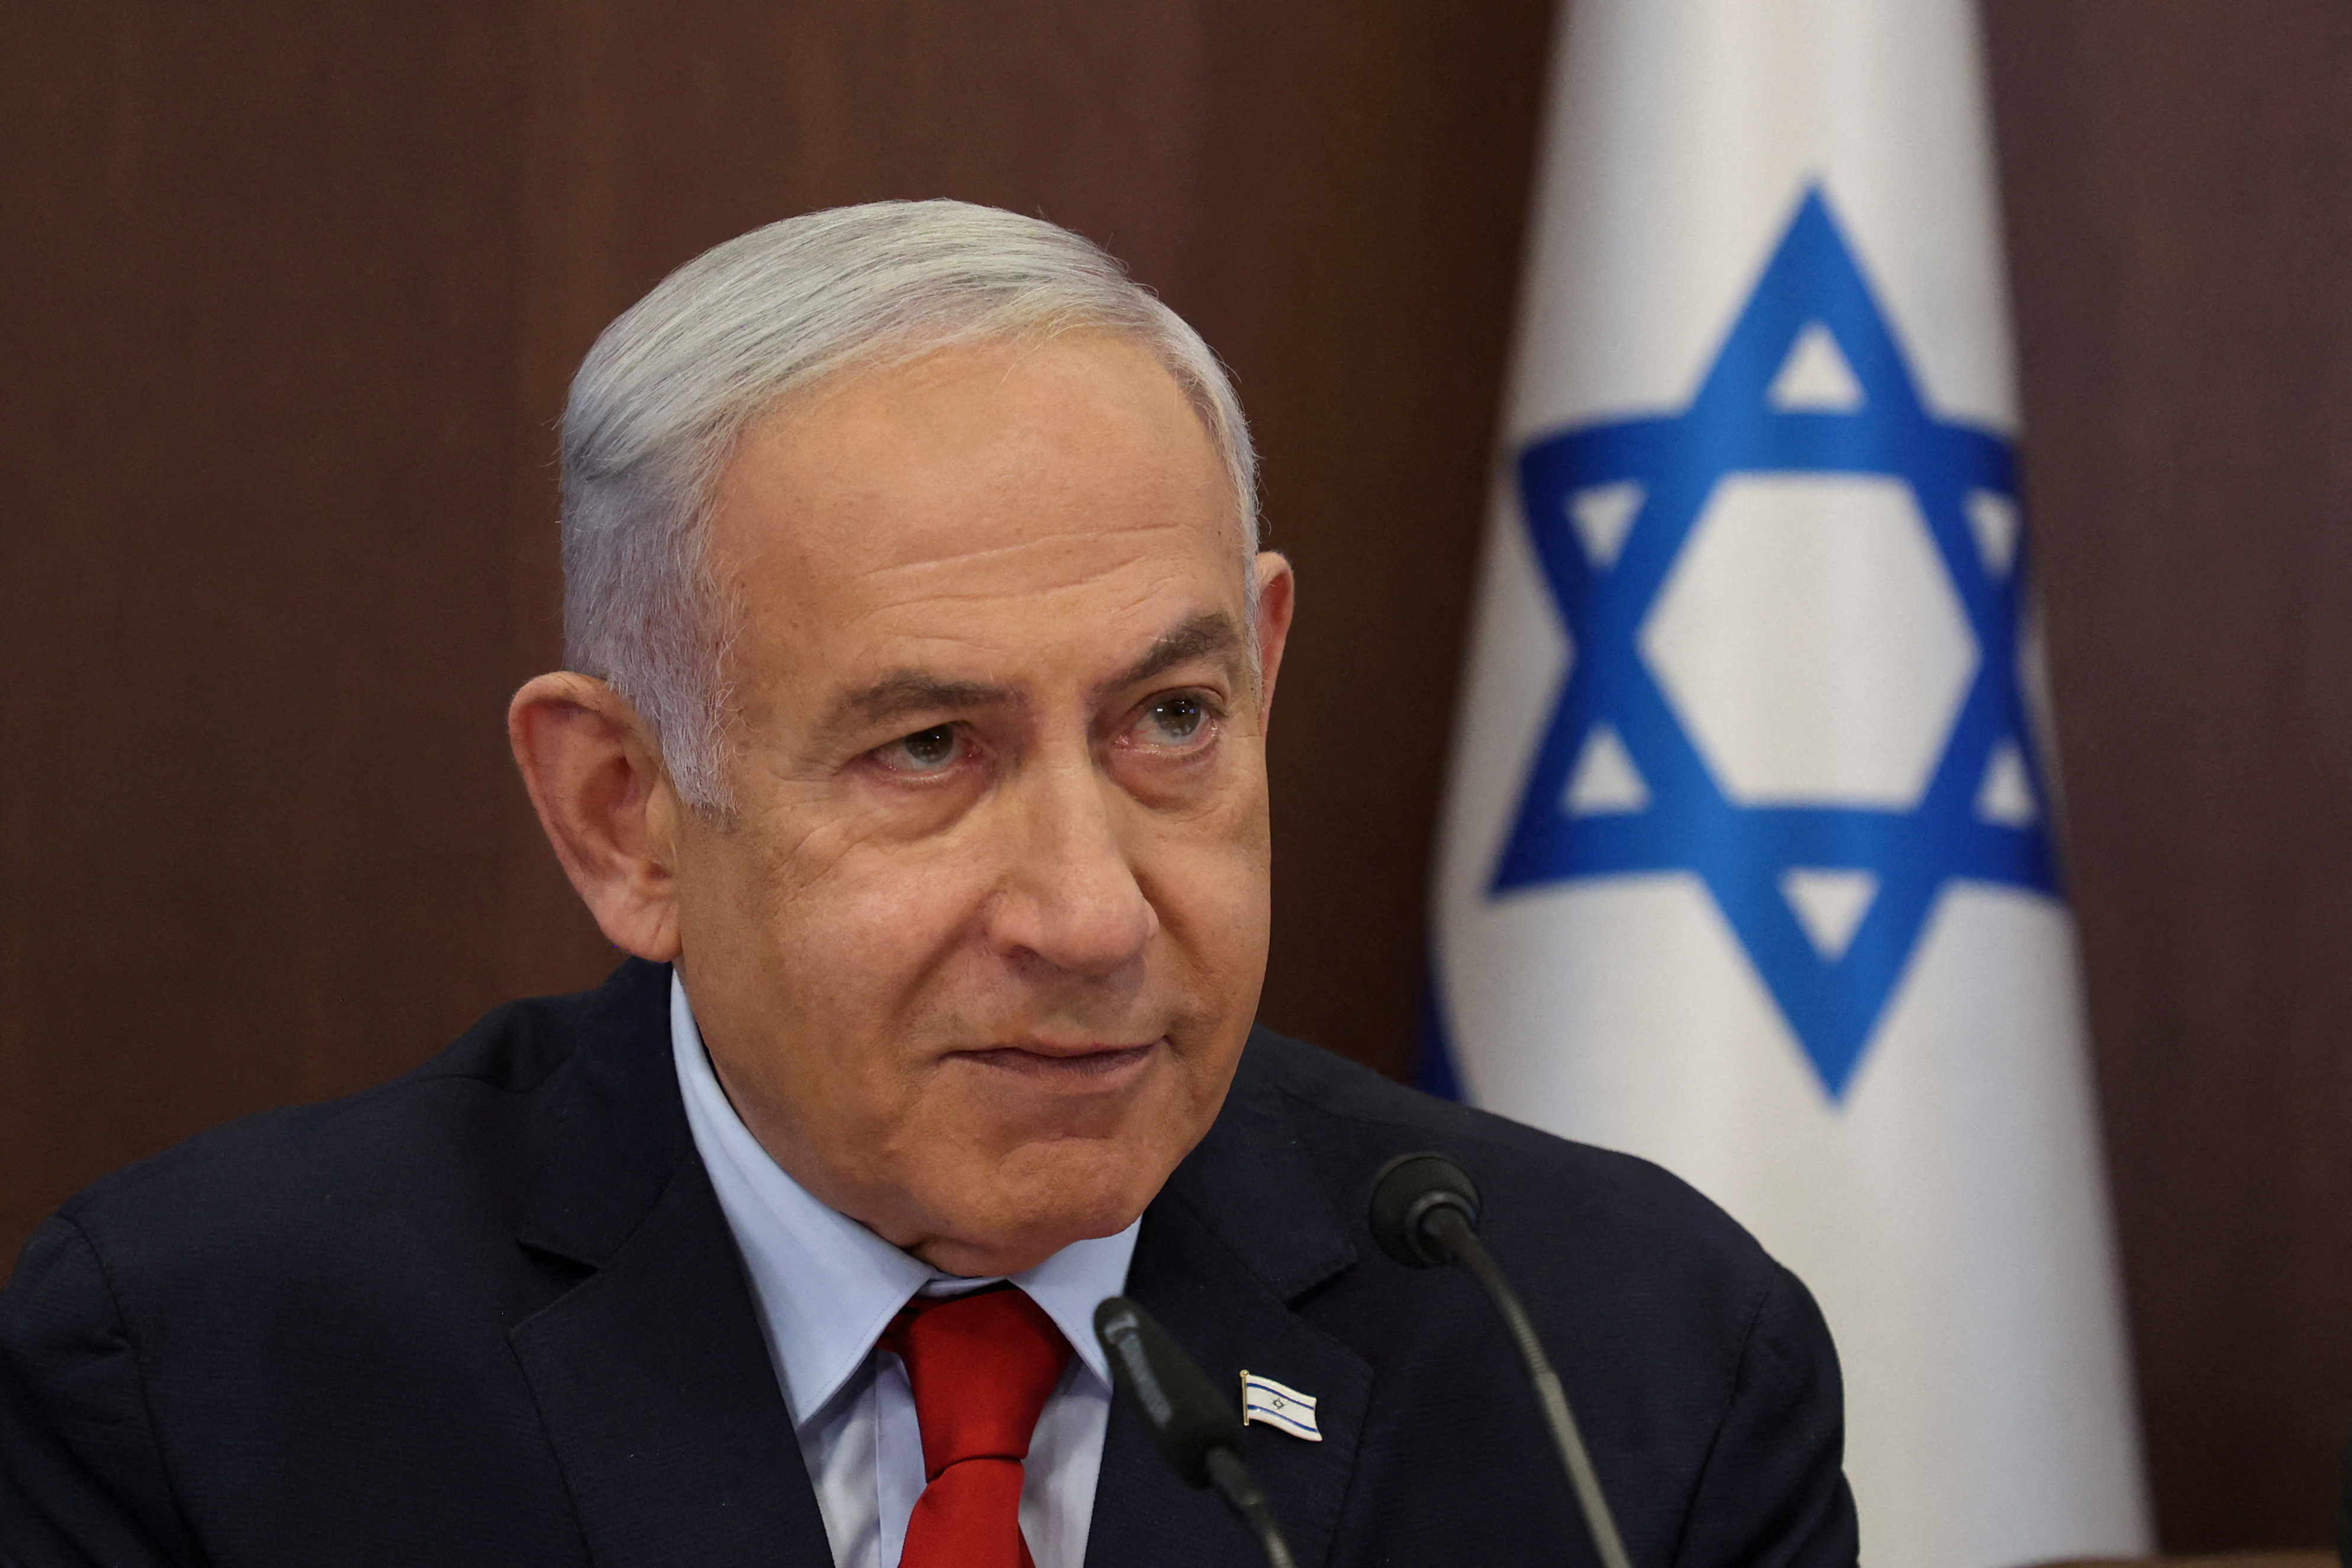 El primer ministro israelí Benjamin Netanyahu (Gil Cohen-Magen/ REUTERS)